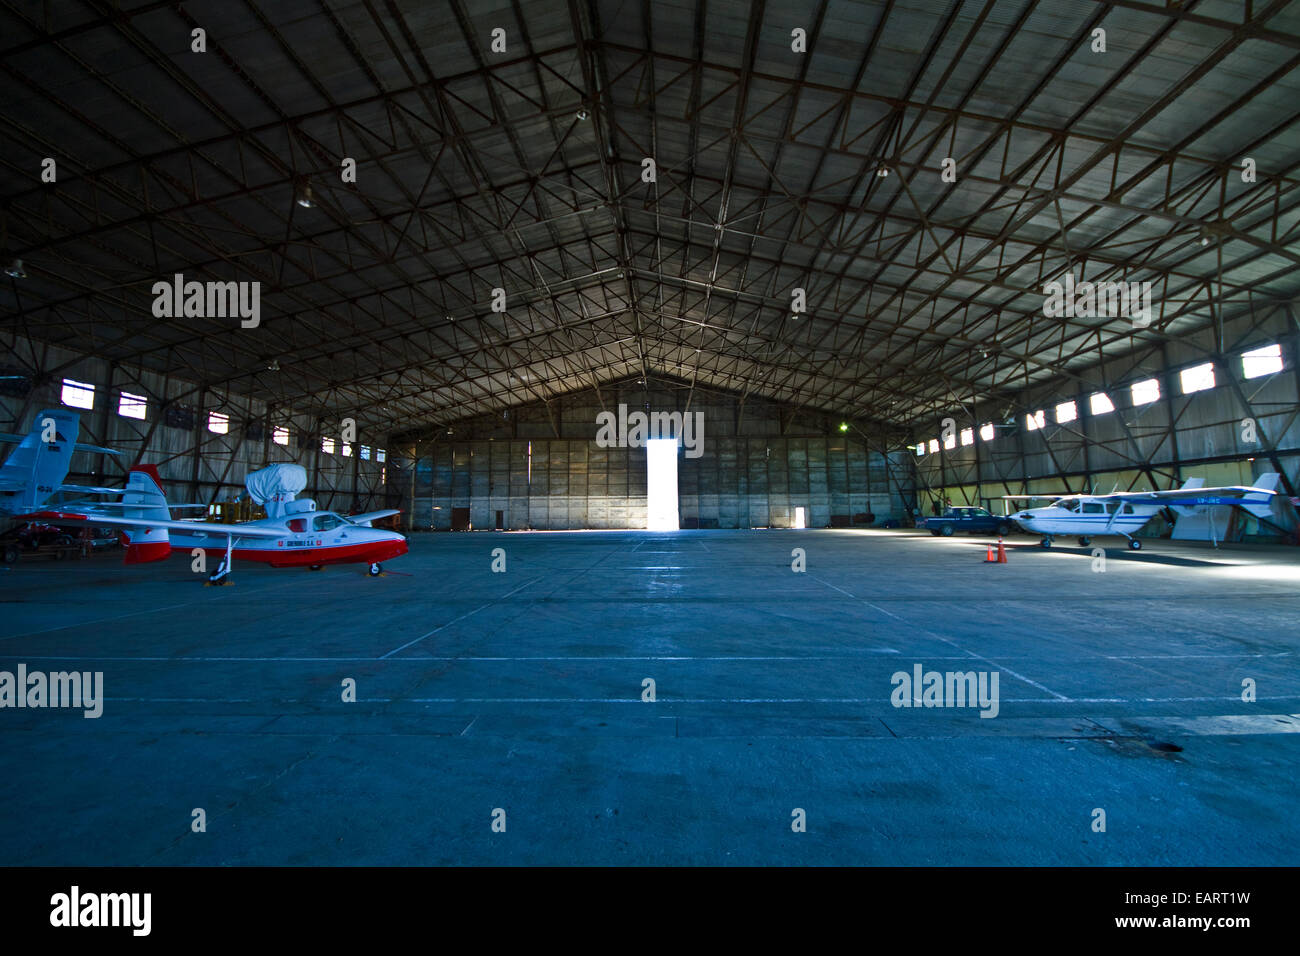 Un énorme hangar avions avions maisons vides pour alpine flying. Banque D'Images